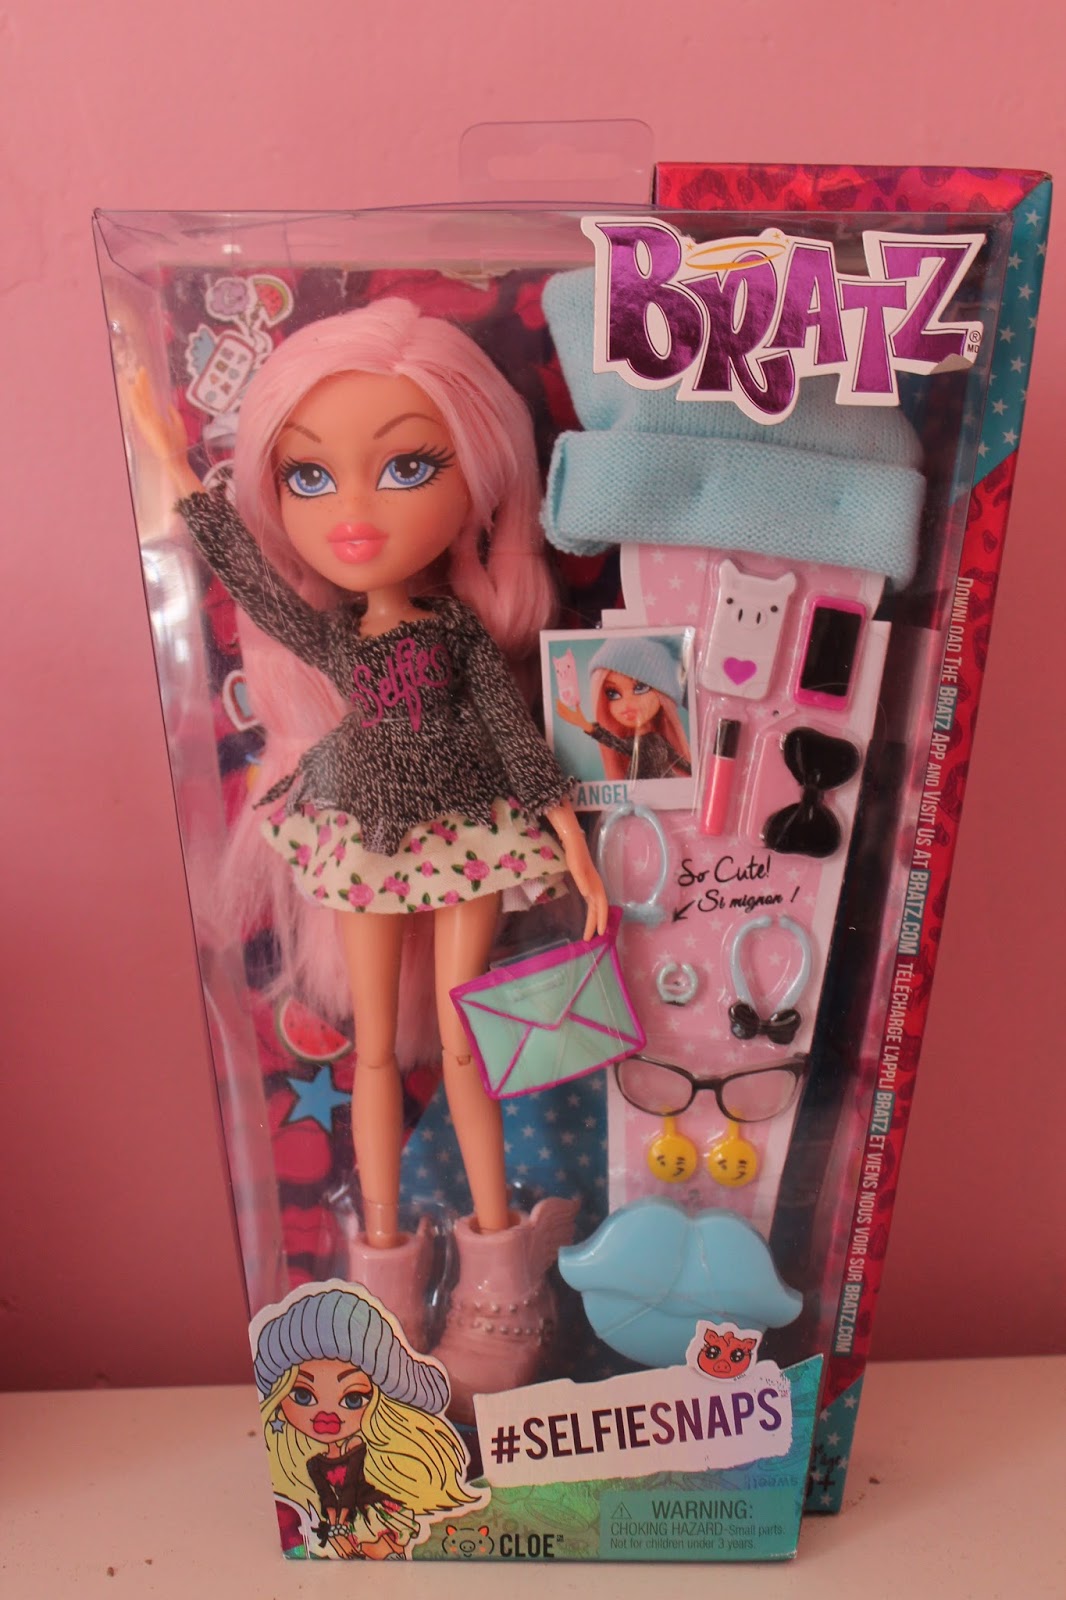 She's An Angel! Alwayz Bratz Cloe Doll Review!! 